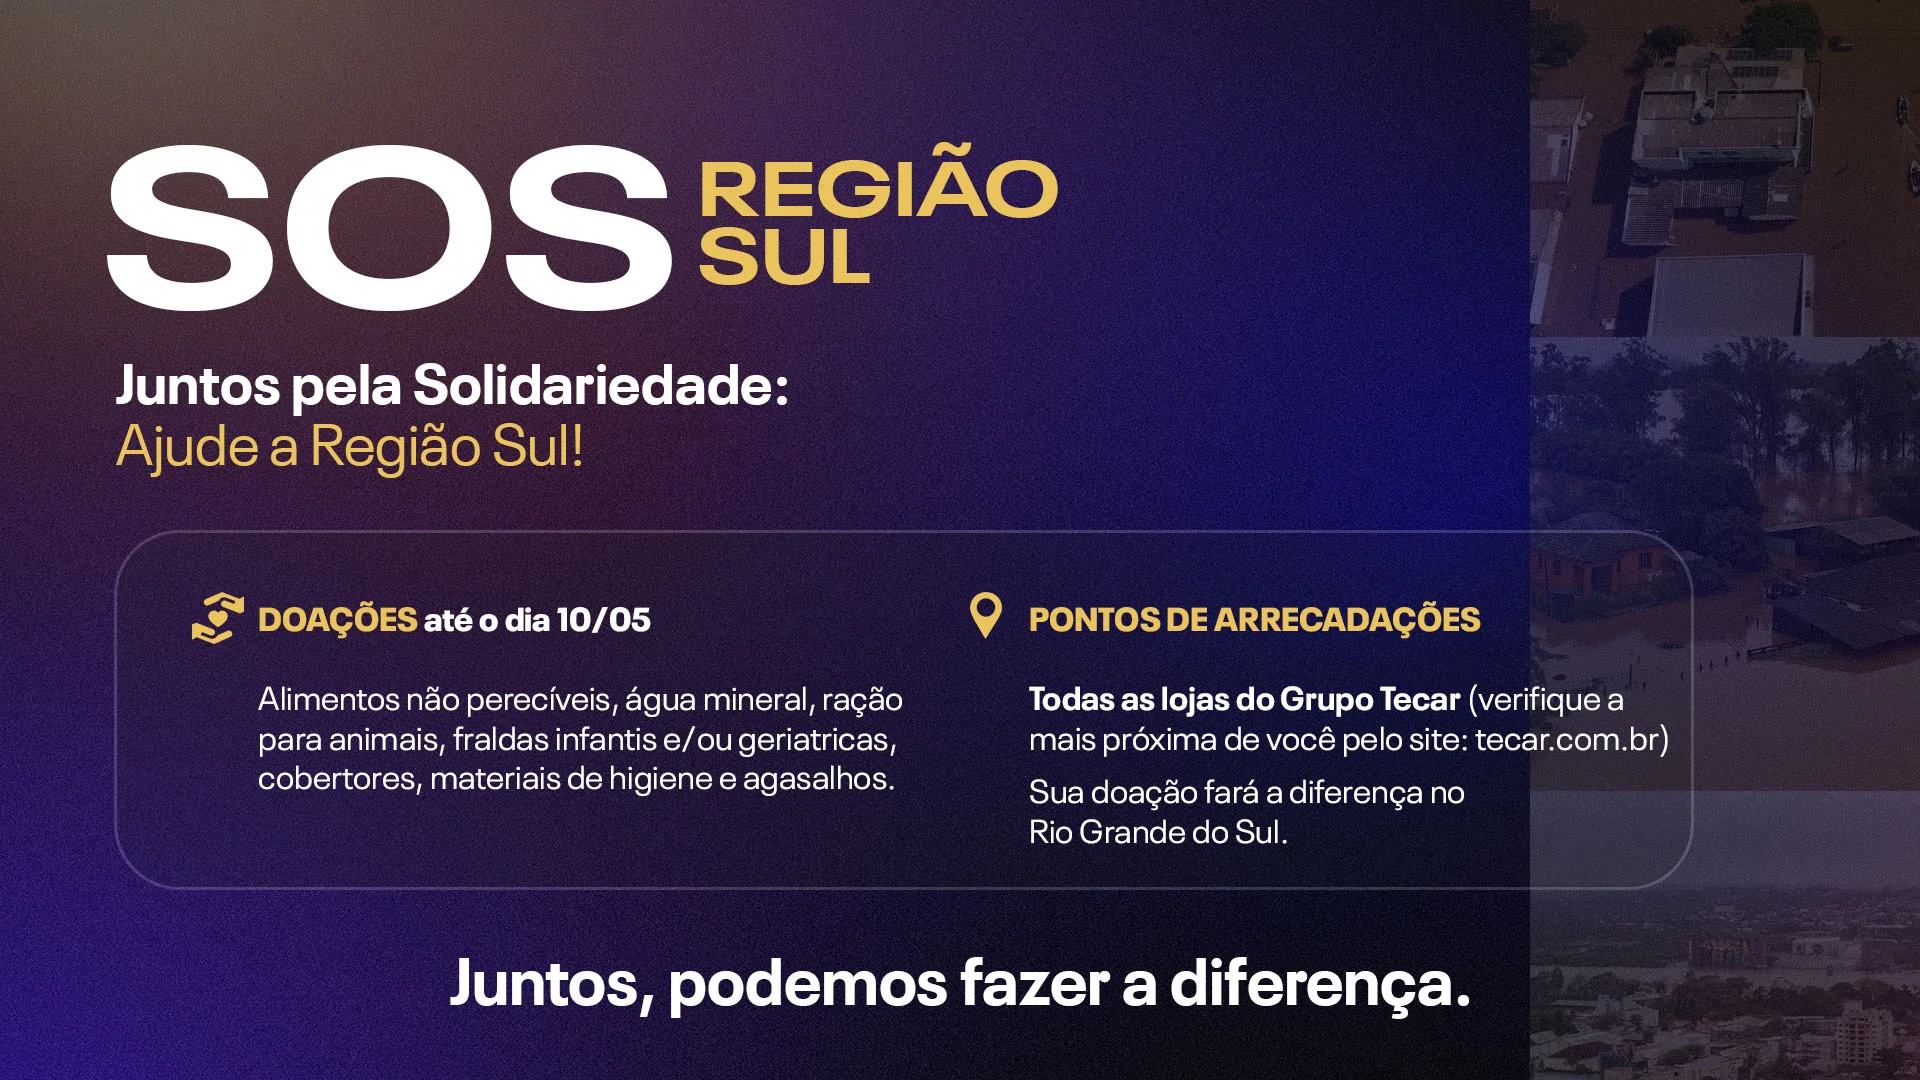 SOS Região Sul: Juntos pela solidariedade